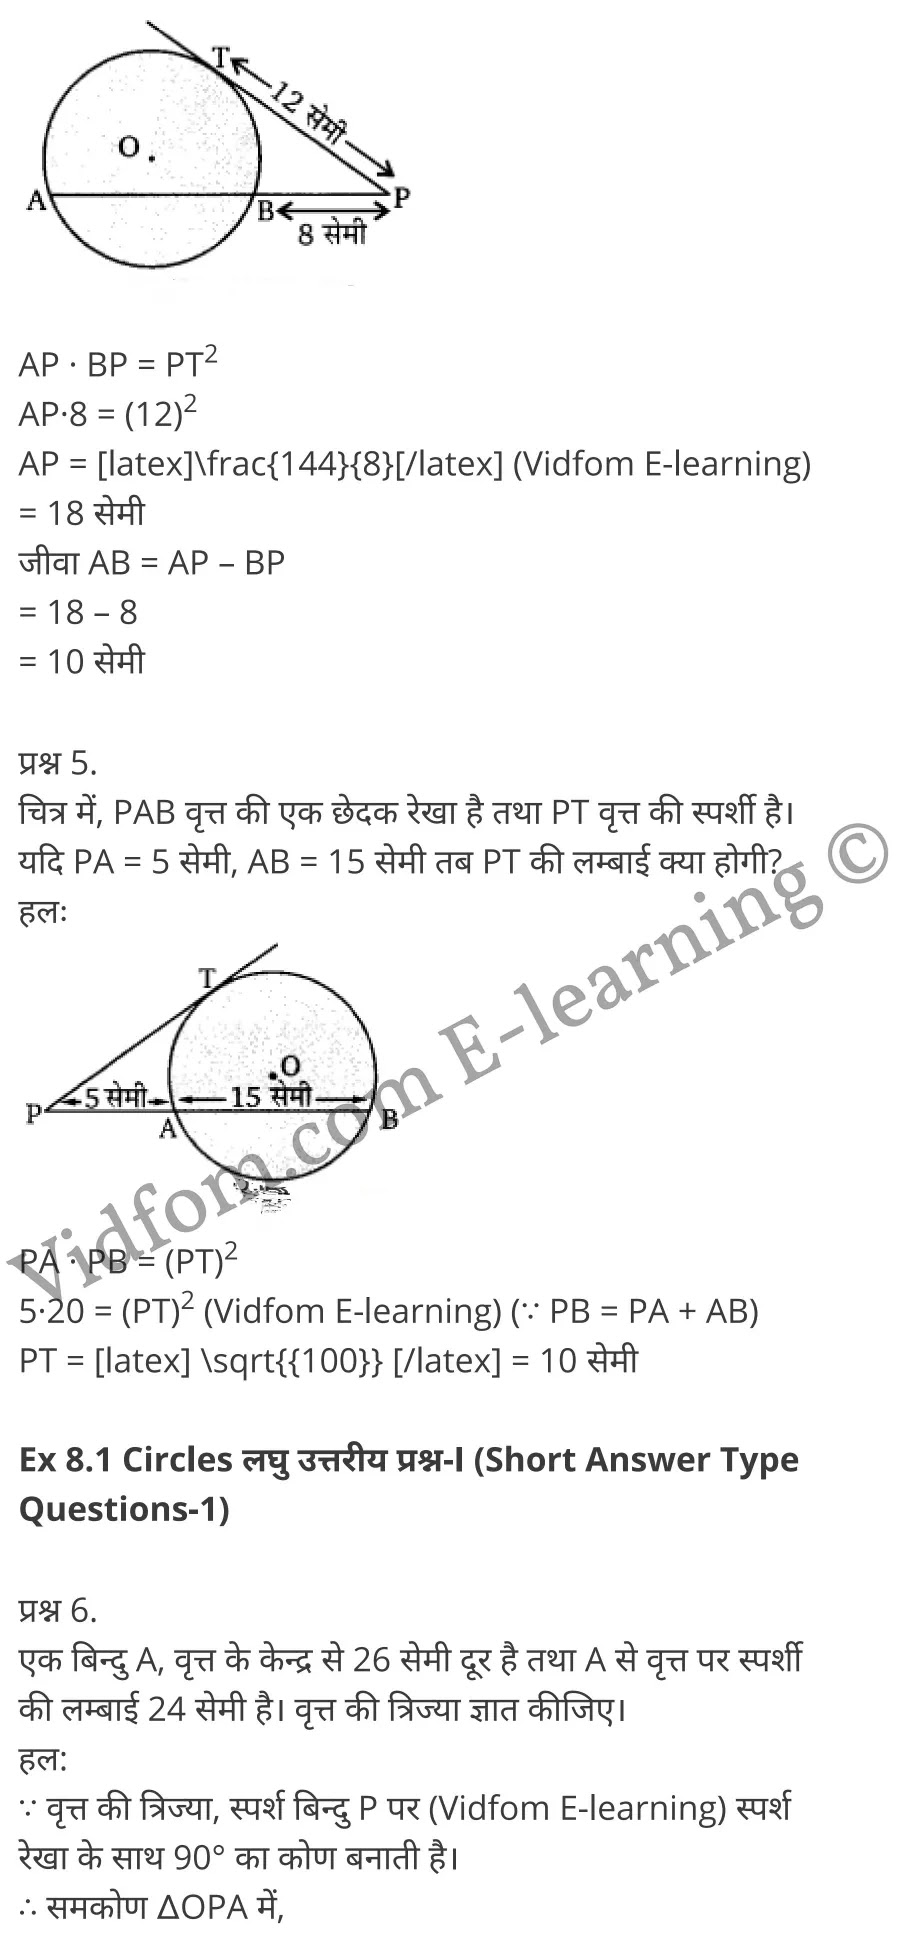 Balaji Maths Book Solutions Class 10 Chapter 8 Circles (वृत्त)  Chapter 8 Circles Ex 8.1 Chapter 8 Circles Ex 8.2 कक्षा 10 बालाजी गणित  के नोट्स  हिंदी में एनसीईआरटी समाधान,     class 10 Balaji Maths Chapter 8,   class 10 Balaji Maths Chapter 8 ncert solutions in Hindi,   class 10 Balaji Maths Chapter 8 notes in hindi,   class 10 Balaji Maths Chapter 8 question answer,   class 10 Balaji Maths Chapter 8 notes,   class 10 Balaji Maths Chapter 8 class 10 Balaji Maths Chapter 8 in  hindi,    class 10 Balaji Maths Chapter 8 important questions in  hindi,   class 10 Balaji Maths Chapter 8 notes in hindi,    class 10 Balaji Maths Chapter 8 test,   class 10 Balaji Maths Chapter 8 pdf,   class 10 Balaji Maths Chapter 8 notes pdf,   class 10 Balaji Maths Chapter 8 exercise solutions,   class 10 Balaji Maths Chapter 8 notes study rankers,   class 10 Balaji Maths Chapter 8 notes,    class 10 Balaji Maths Chapter 8  class 10  notes pdf,   class 10 Balaji Maths Chapter 8 class 10  notes  ncert,   class 10 Balaji Maths Chapter 8 class 10 pdf,   class 10 Balaji Maths Chapter 8  book,   class 10 Balaji Maths Chapter 8 quiz class 10  ,    10  th class 10 Balaji Maths Chapter 8  book up board,   up board 10  th class 10 Balaji Maths Chapter 8 notes,  class 10 Balaji Maths,   class 10 Balaji Maths ncert solutions in Hindi,   class 10 Balaji Maths notes in hindi,   class 10 Balaji Maths question answer,   class 10 Balaji Maths notes,  class 10 Balaji Maths class 10 Balaji Maths Chapter 8 in  hindi,    class 10 Balaji Maths important questions in  hindi,   class 10 Balaji Maths notes in hindi,    class 10 Balaji Maths test,  class 10 Balaji Maths class 10 Balaji Maths Chapter 8 pdf,   class 10 Balaji Maths notes pdf,   class 10 Balaji Maths exercise solutions,   class 10 Balaji Maths,  class 10 Balaji Maths notes study rankers,   class 10 Balaji Maths notes,  class 10 Balaji Maths notes,   class 10 Balaji Maths  class 10  notes pdf,   class 10 Balaji Maths class 10  notes  ncert,   class 10 Balaji Maths class 10 pdf,   class 10 Balaji Maths  book,  class 10 Balaji Maths quiz class 10  ,  10  th class 10 Balaji Maths    book up board,    up board 10  th class 10 Balaji Maths notes,      कक्षा 10 बालाजी गणित अध्याय 8 ,  कक्षा 10 बालाजी गणित, कक्षा 10 बालाजी गणित अध्याय 8  के नोट्स हिंदी में,  कक्षा 10 का हिंदी अध्याय 8 का प्रश्न उत्तर,  कक्षा 10 बालाजी गणित अध्याय 8  के नोट्स,  10 कक्षा बालाजी गणित  हिंदी में, कक्षा 10 बालाजी गणित अध्याय 8  हिंदी में,  कक्षा 10 बालाजी गणित अध्याय 8  महत्वपूर्ण प्रश्न हिंदी में, कक्षा 10   हिंदी के नोट्स  हिंदी में, बालाजी गणित हिंदी में  कक्षा 10 नोट्स pdf,    बालाजी गणित हिंदी में  कक्षा 10 नोट्स 2021 ncert,   बालाजी गणित हिंदी  कक्षा 10 pdf,   बालाजी गणित हिंदी में  पुस्तक,   बालाजी गणित हिंदी में की बुक,   बालाजी गणित हिंदी में  प्रश्नोत्तरी class 10 ,  बिहार बोर्ड 10  पुस्तक वीं हिंदी नोट्स,    बालाजी गणित कक्षा 10 नोट्स 2021 ncert,   बालाजी गणित  कक्षा 10 pdf,   बालाजी गणित  पुस्तक,   बालाजी गणित  प्रश्नोत्तरी class 10, कक्षा 10 बालाजी गणित,  कक्षा 10 बालाजी गणित  के नोट्स हिंदी में,  कक्षा 10 का हिंदी का प्रश्न उत्तर,  कक्षा 10 बालाजी गणित  के नोट्स,  10 कक्षा हिंदी 2021  हिंदी में, कक्षा 10 बालाजी गणित  हिंदी में,  कक्षा 10 बालाजी गणित  महत्वपूर्ण प्रश्न हिंदी में, कक्षा 10 बालाजी गणित  नोट्स  हिंदी में,